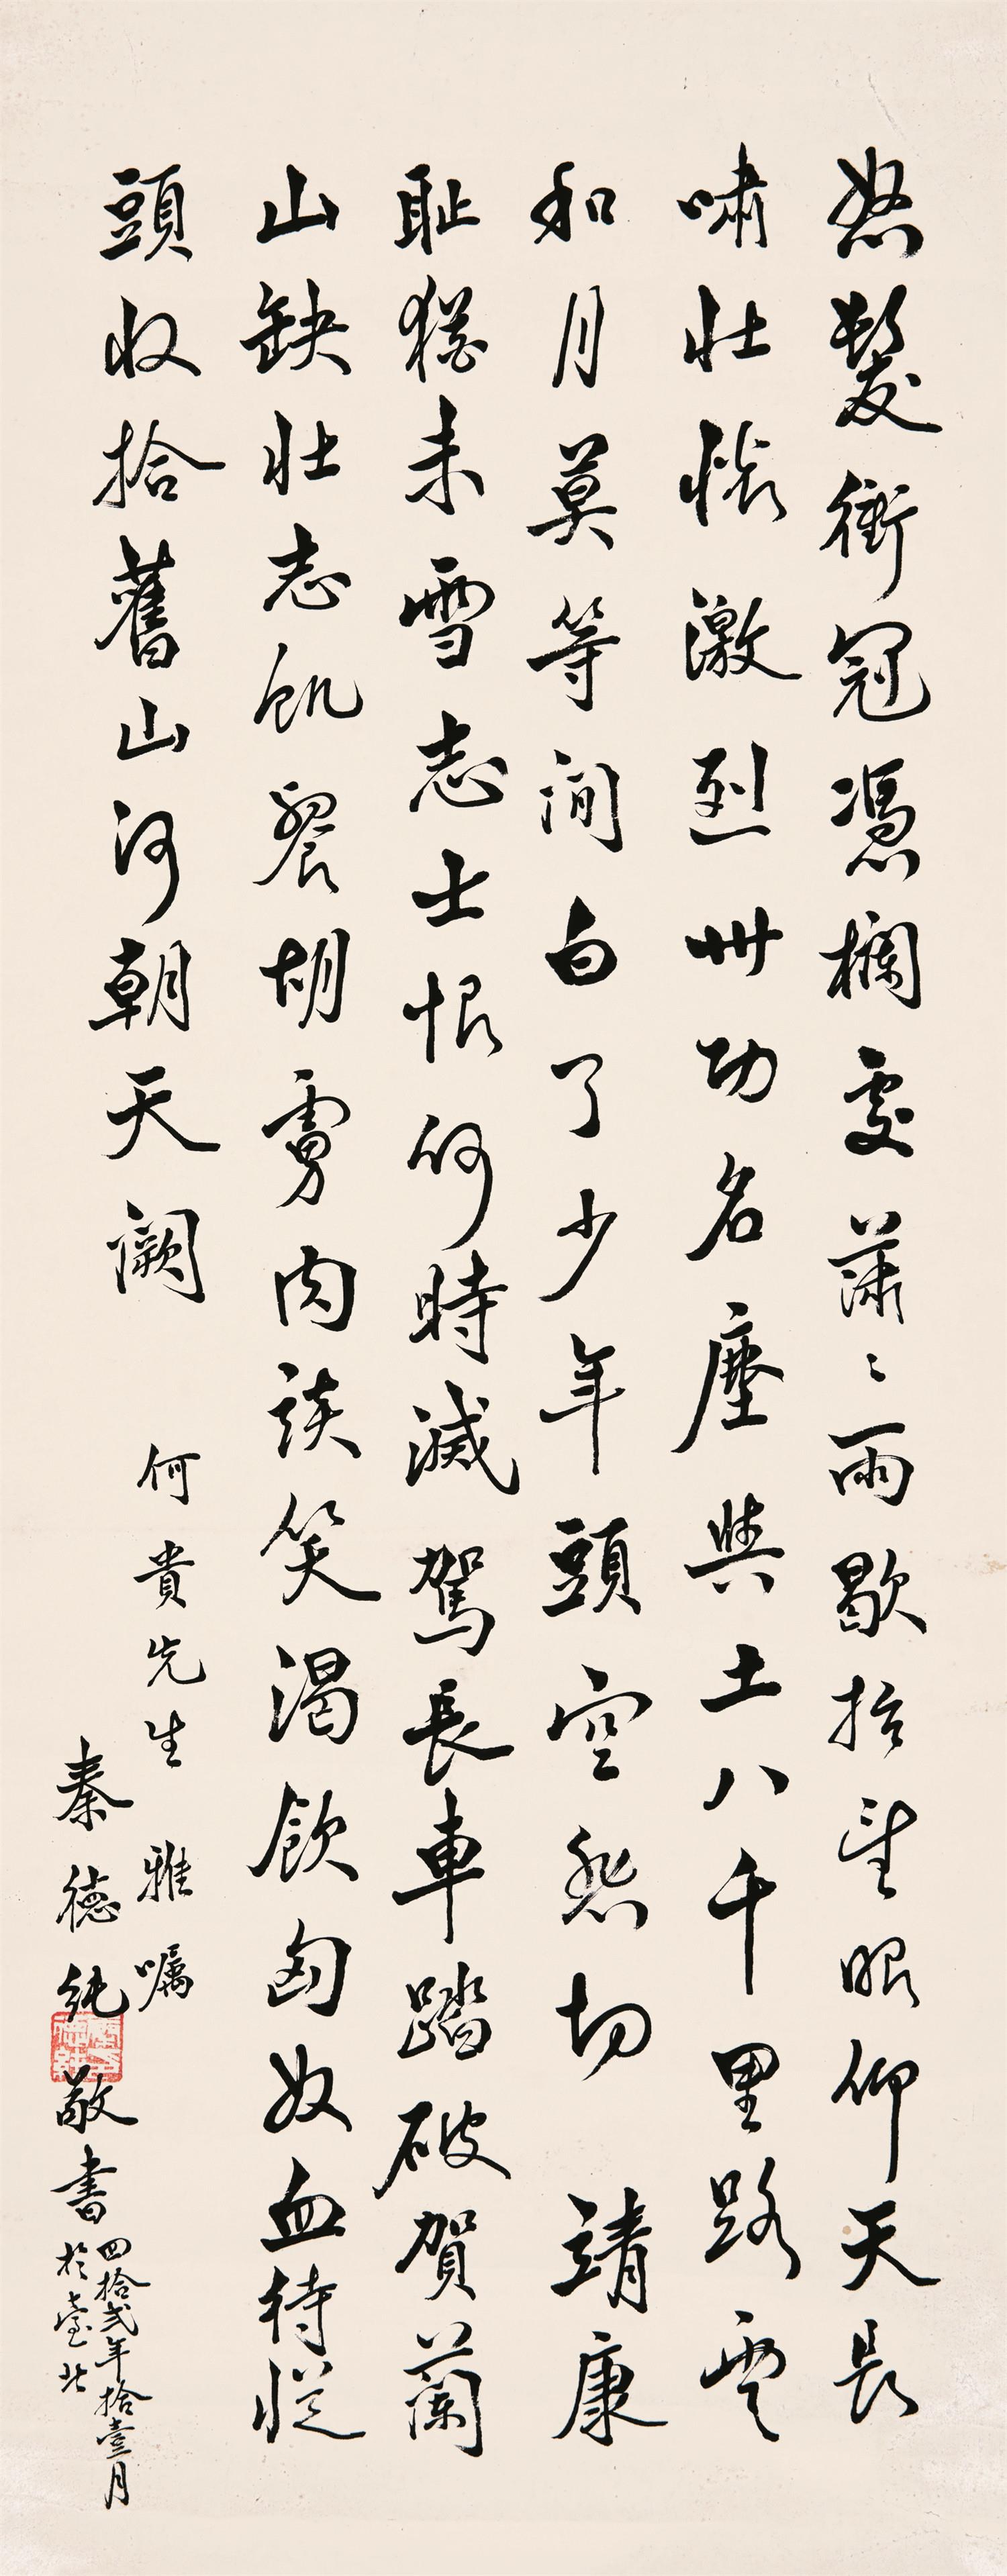 秦德纯(1893-1963)行书《满江红》